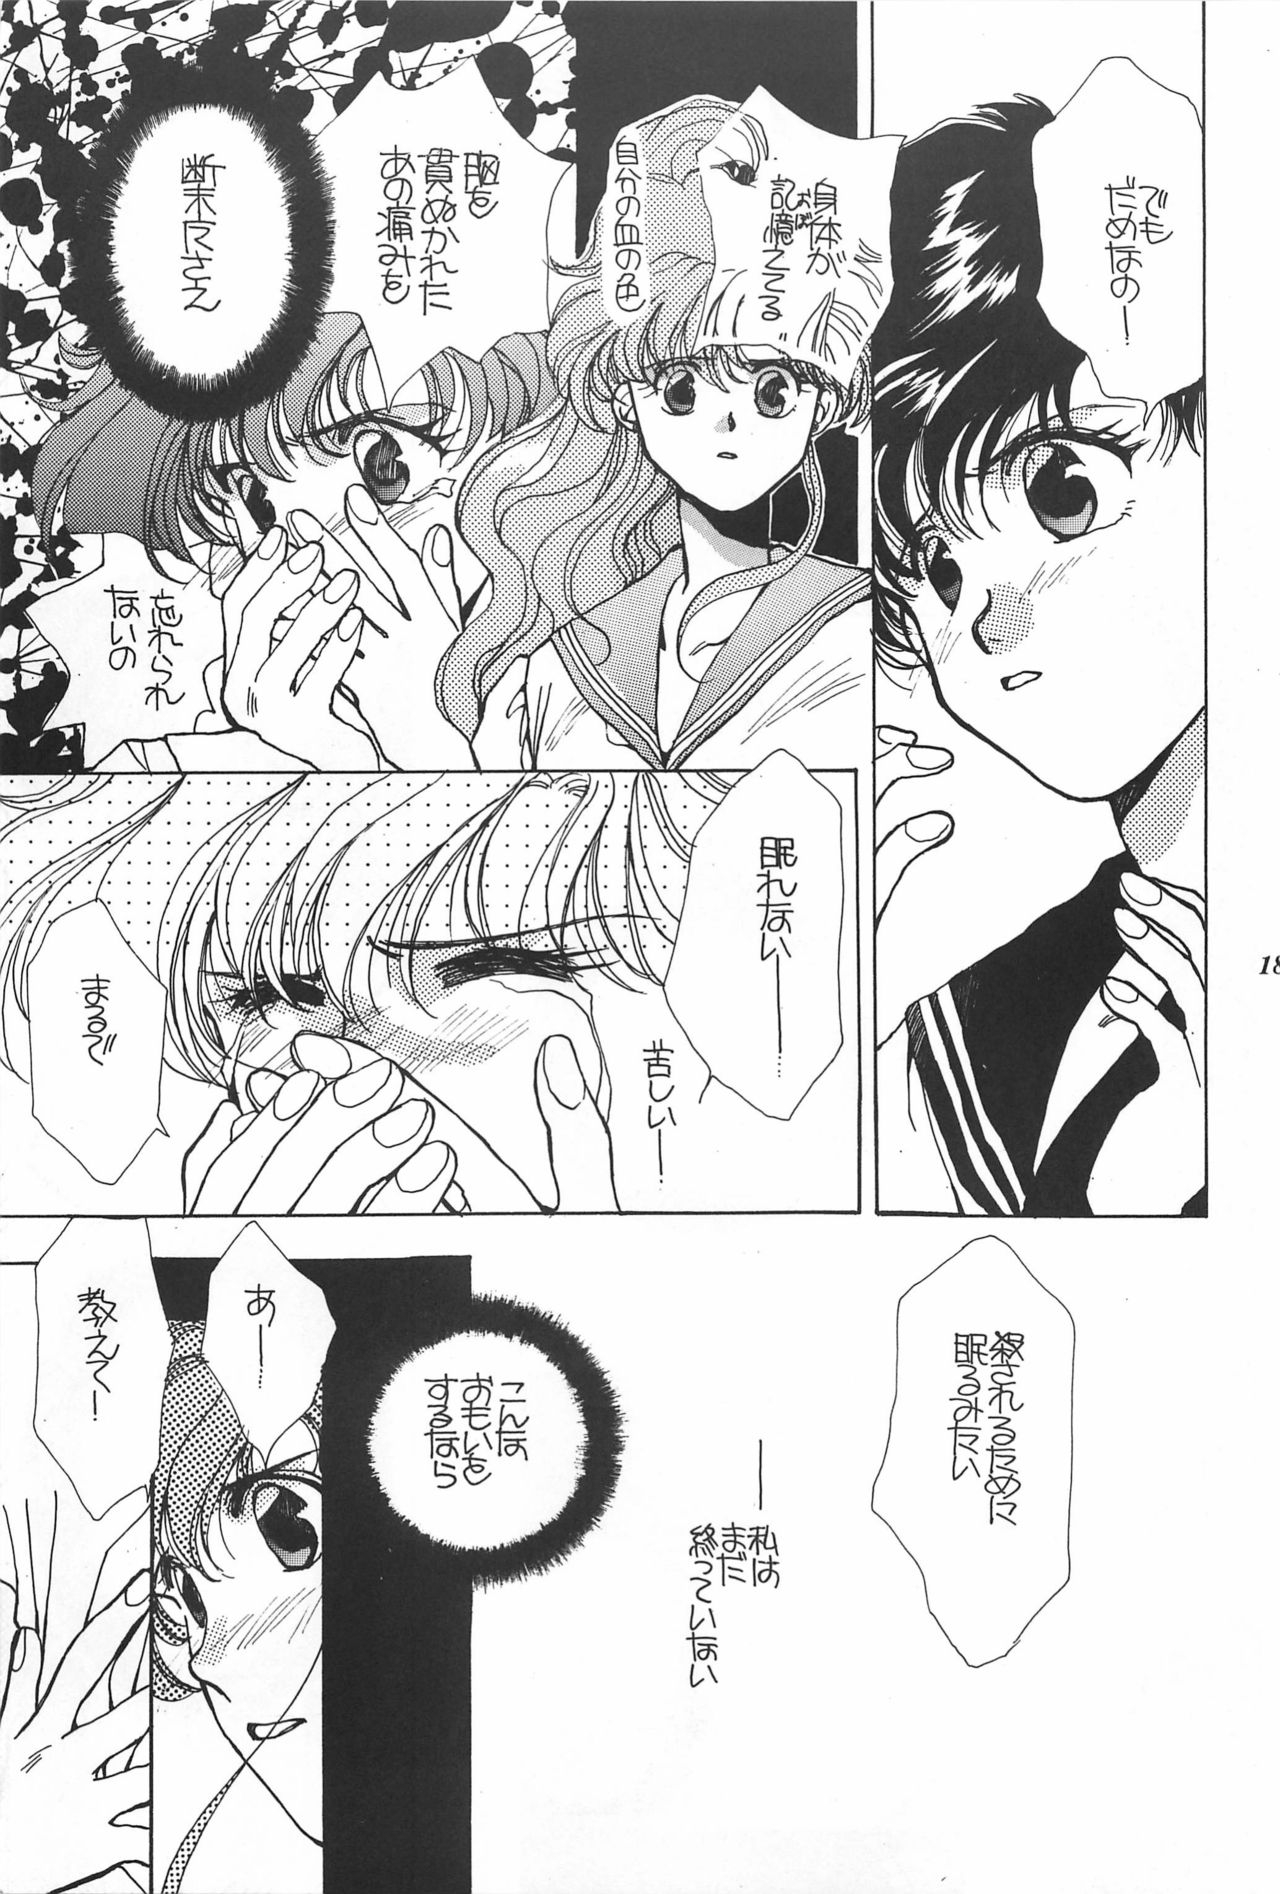 [Hello World (Muttri Moony)] Kaze no You ni Yume no You ni - Sailor Moon Collection (Sailor Moon) 188